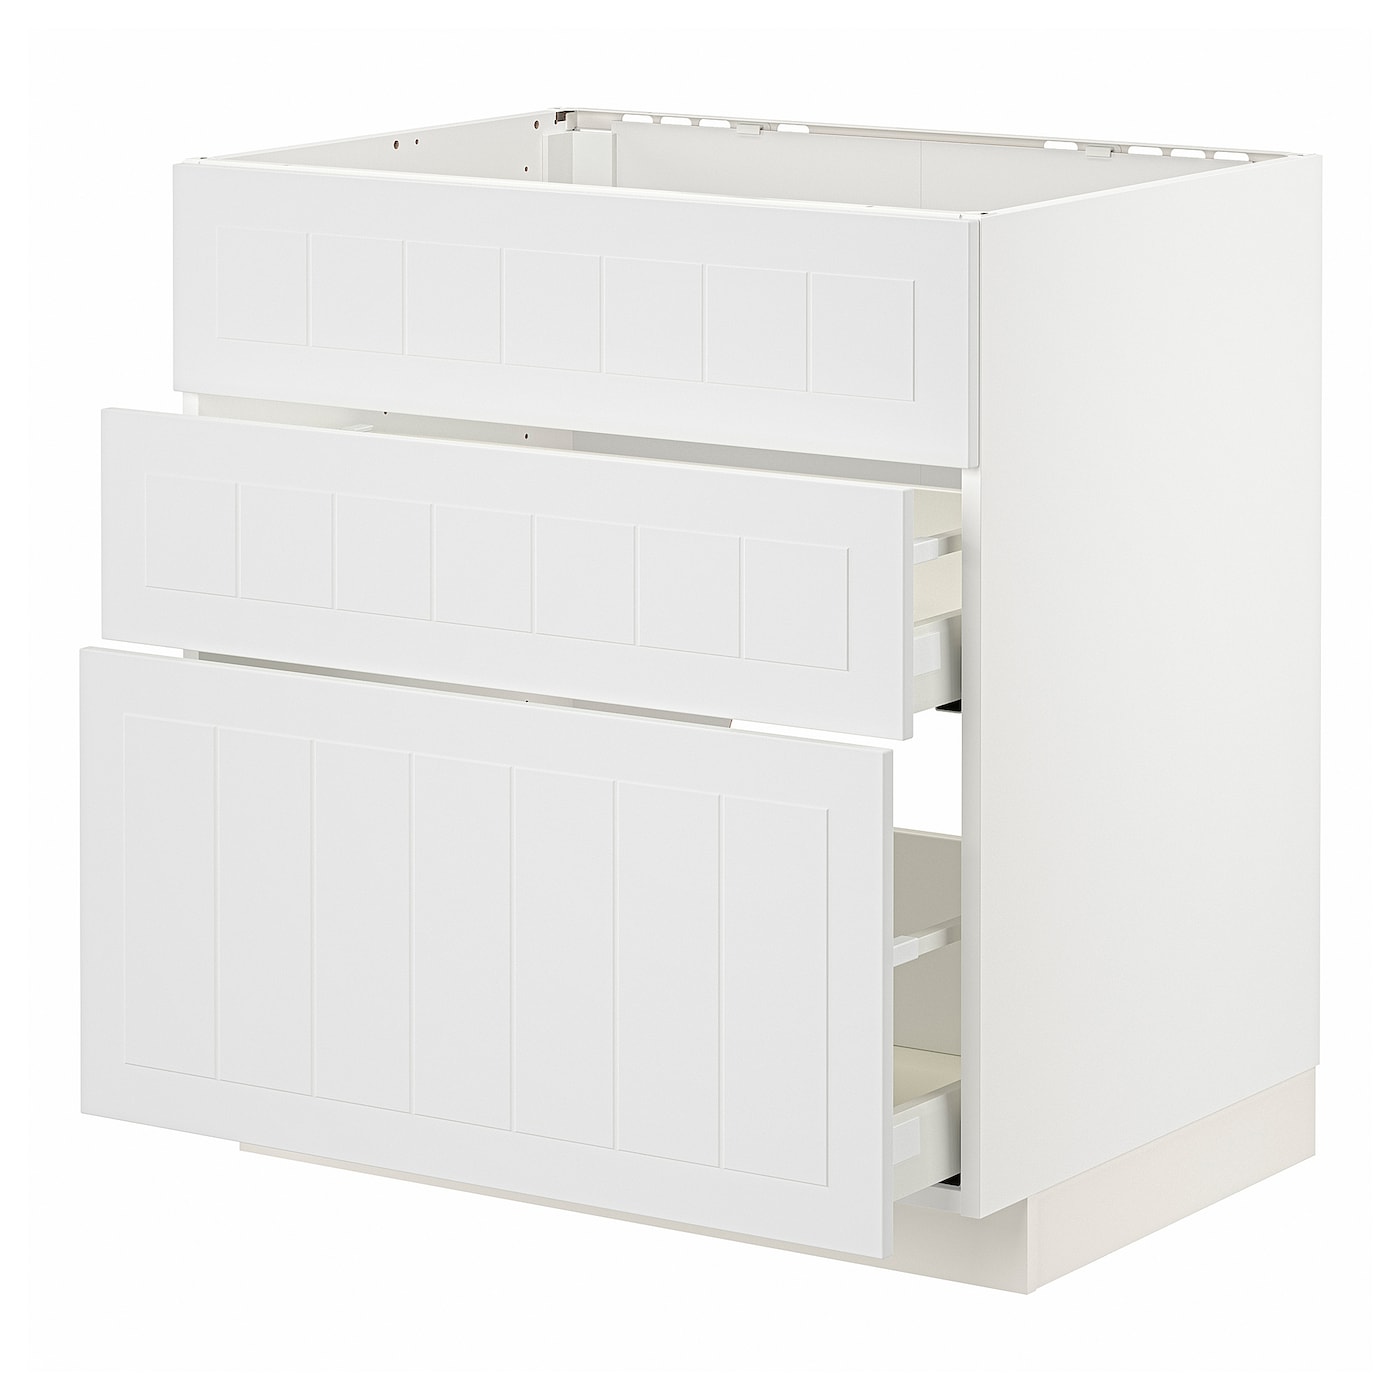 Напольный кухонный шкаф  - IKEA METOD MAXIMERA, 88x61,9x80см, белый, МЕТОД МАКСИМЕРА ИКЕА